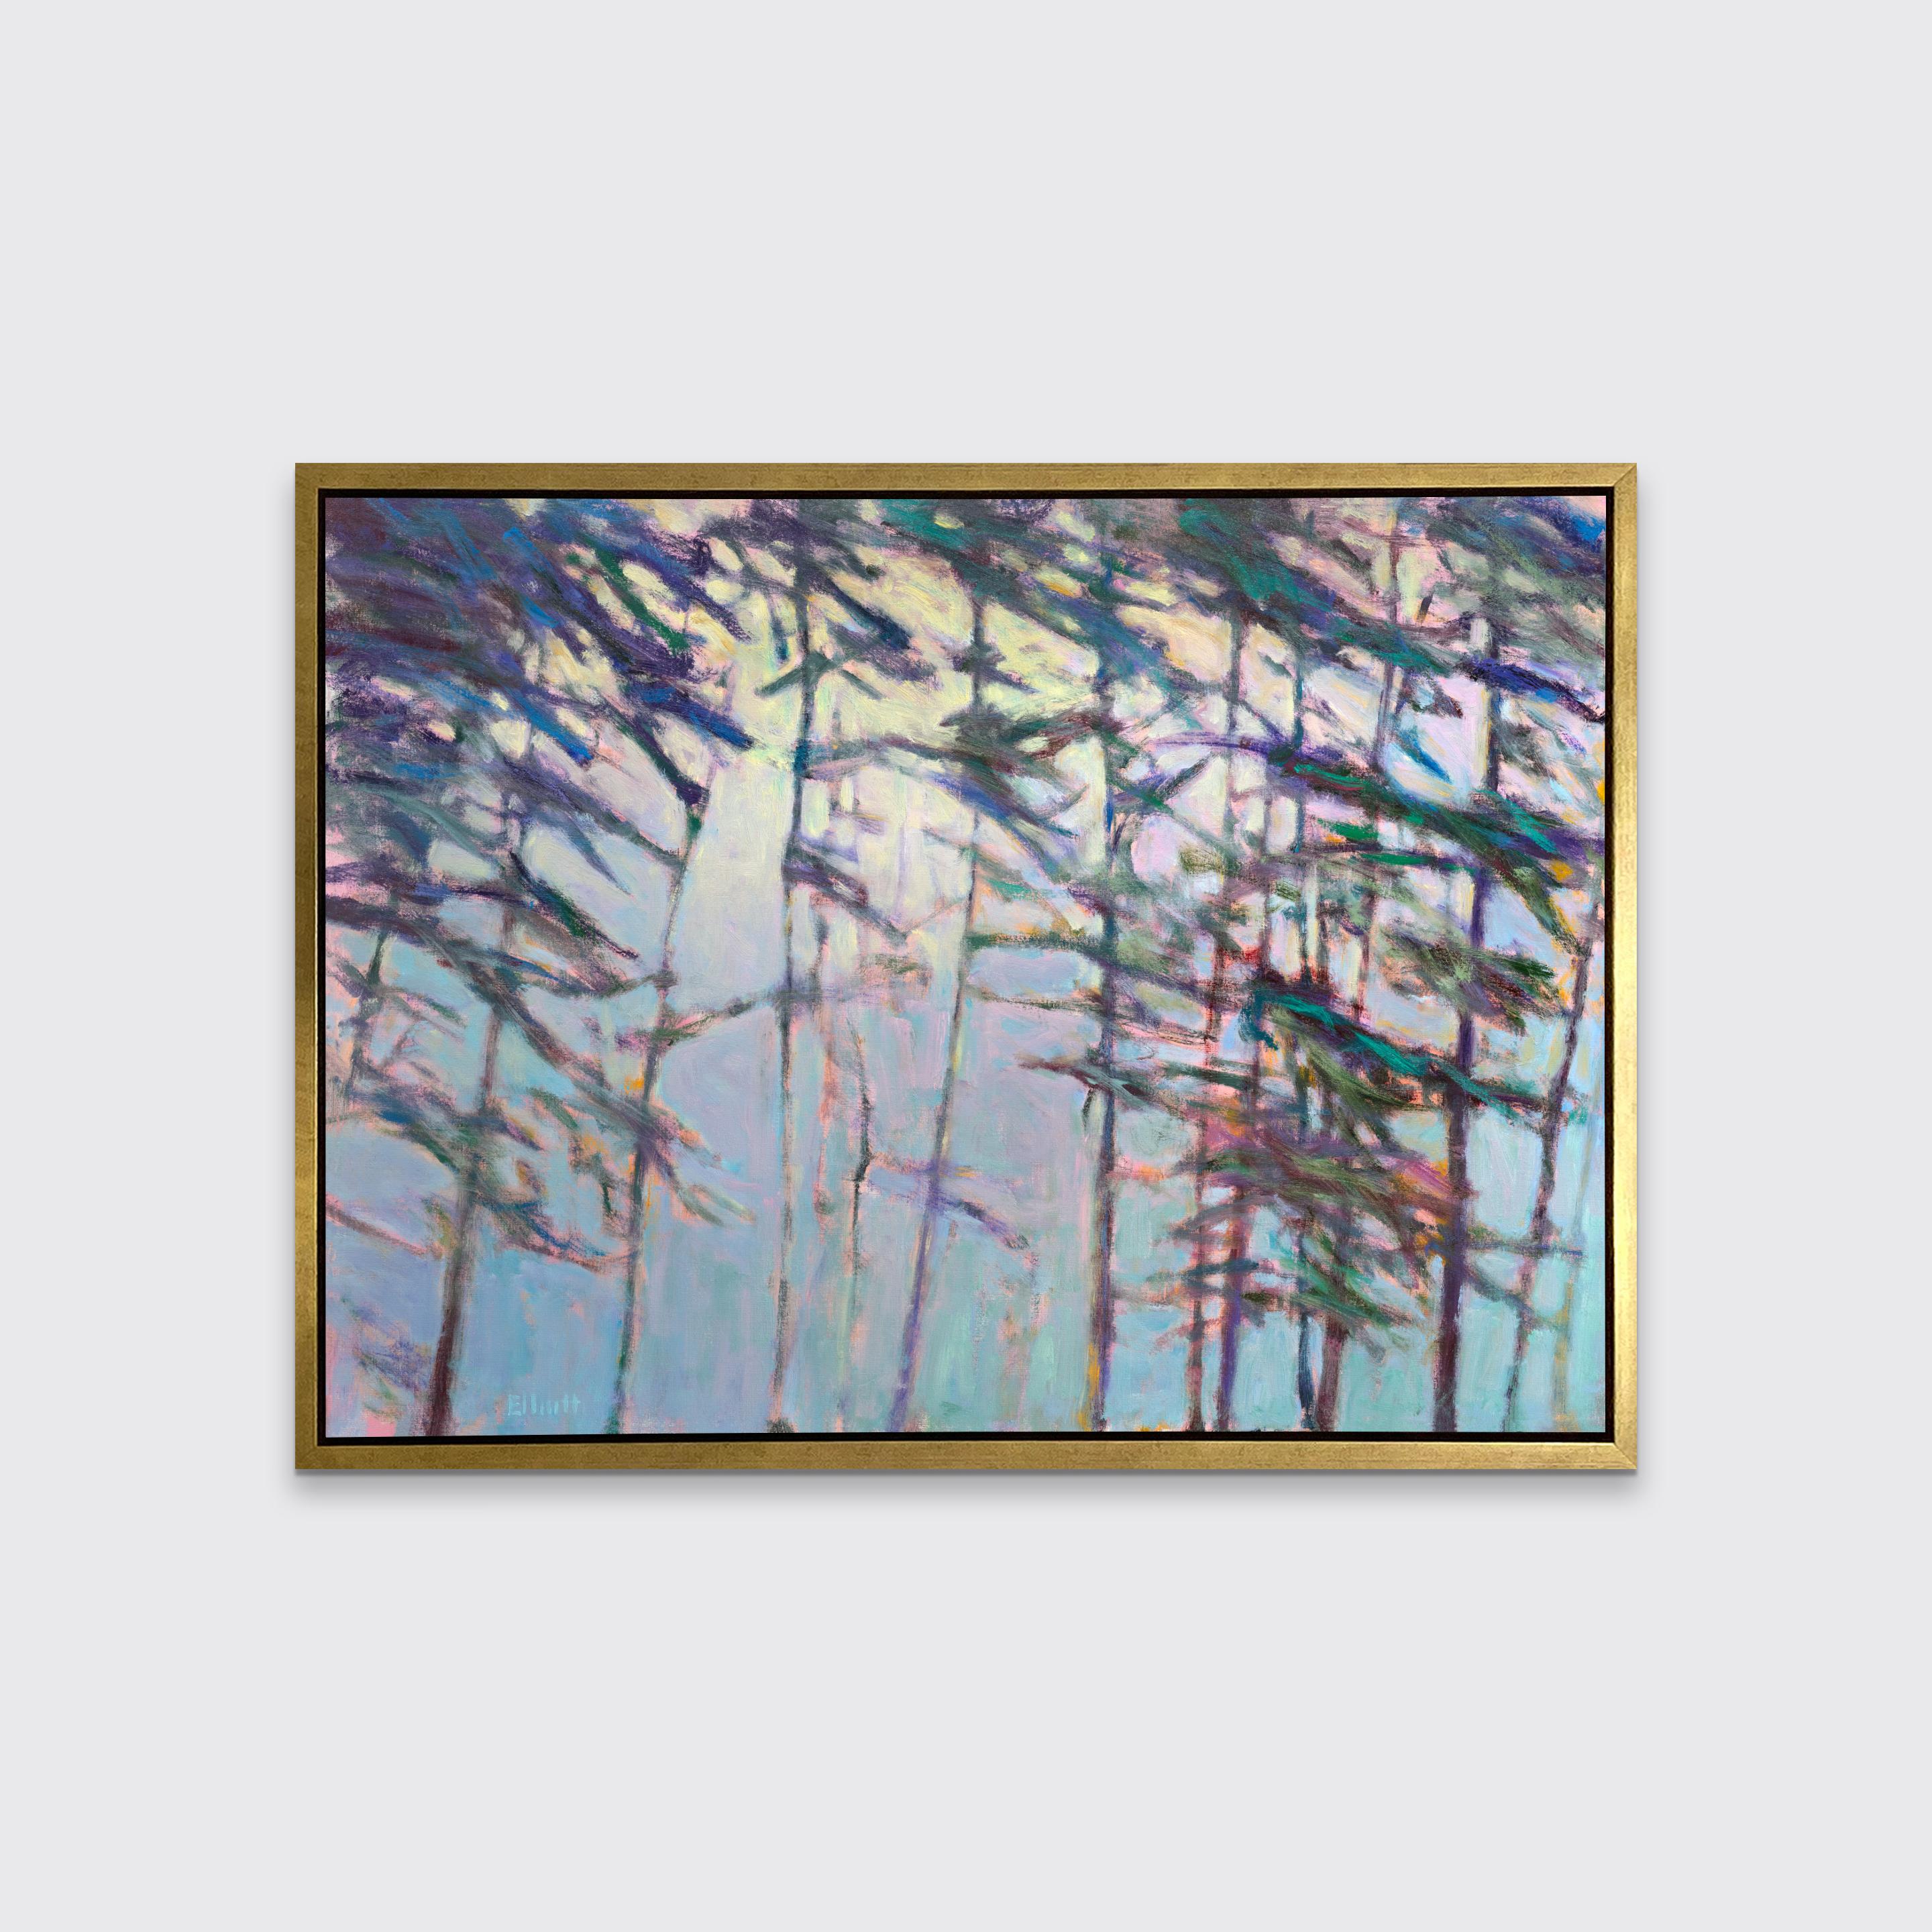 Ce paysage abstrait contemporain en édition limitée par Ken Elliott présente des arbres abstraits dans une palette de tons froids. Les coups de pinceau bleus et violets énergiques qui composent les troncs d'arbre et les feuilles sont réchauffés par